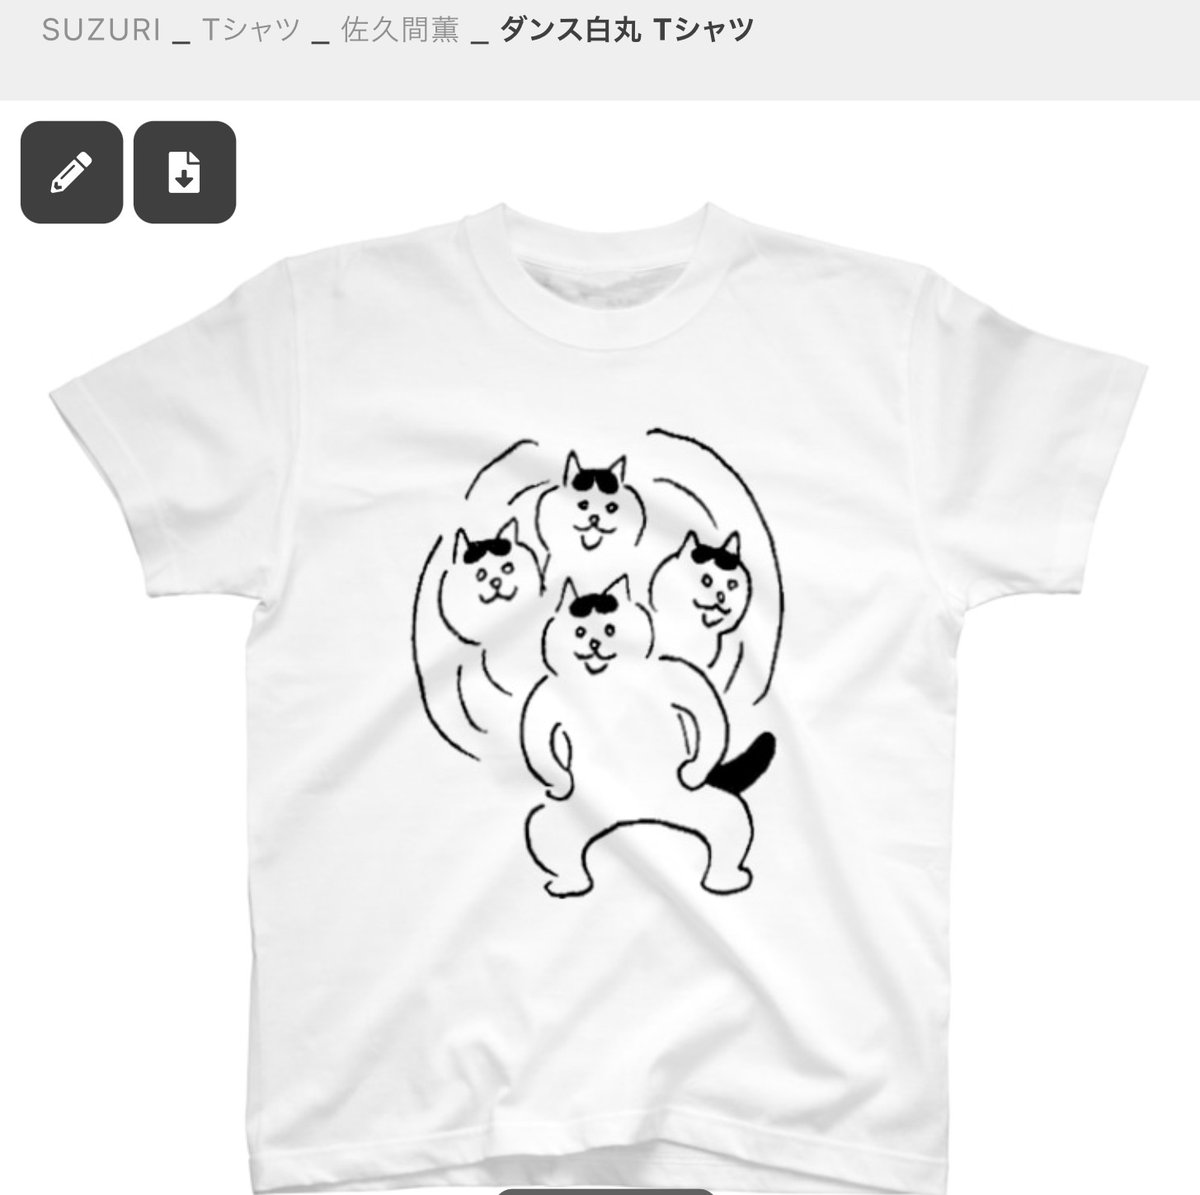 スズリのTシャツセールは明日まで!
よろしくお願いします〜🌳🐓🌳

佐久間薫のイナズマを集める猫Tシャツ https://t.co/aCj8Sr1jId #suzuri 